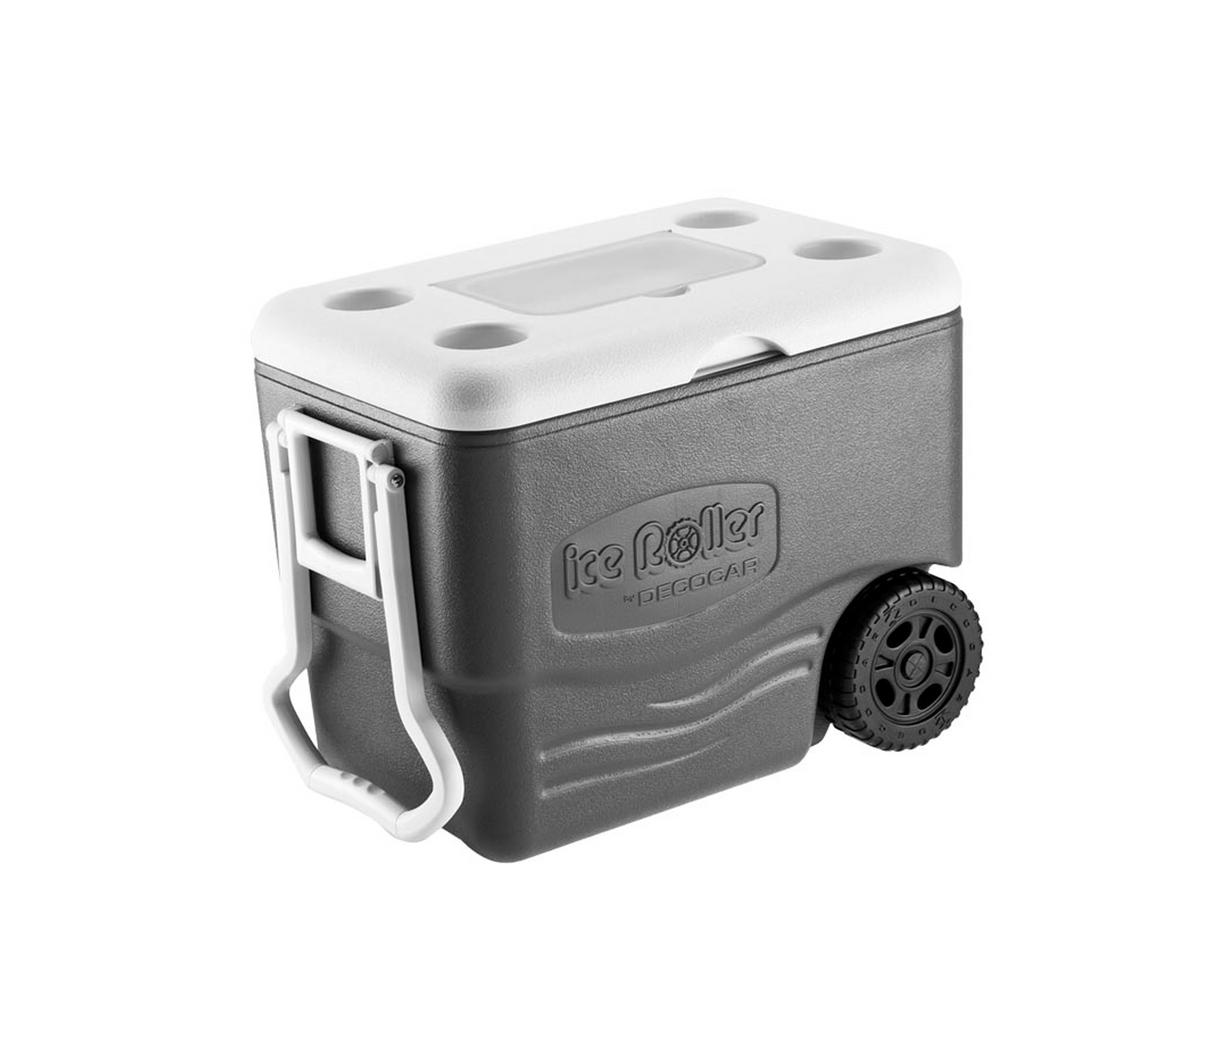 Cava Ice Roller Premium 42 Qts (40 Lt) Decocar